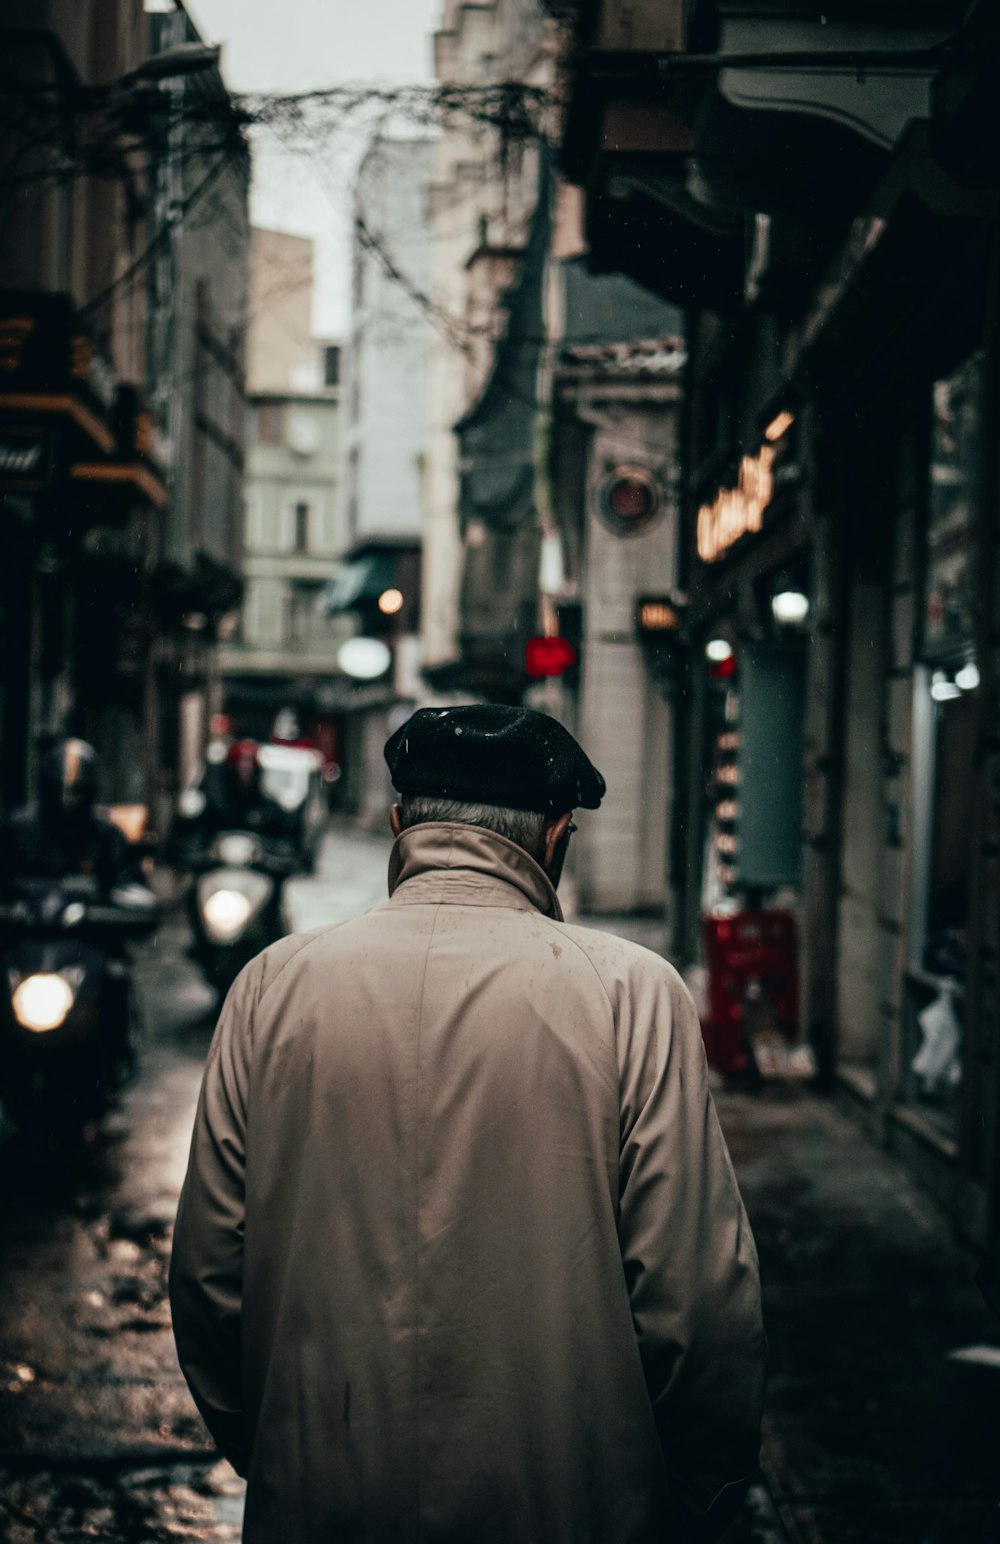 Mann in braunem Hemd und schwarzem Hut geht tagsüber auf der Straße spazieren